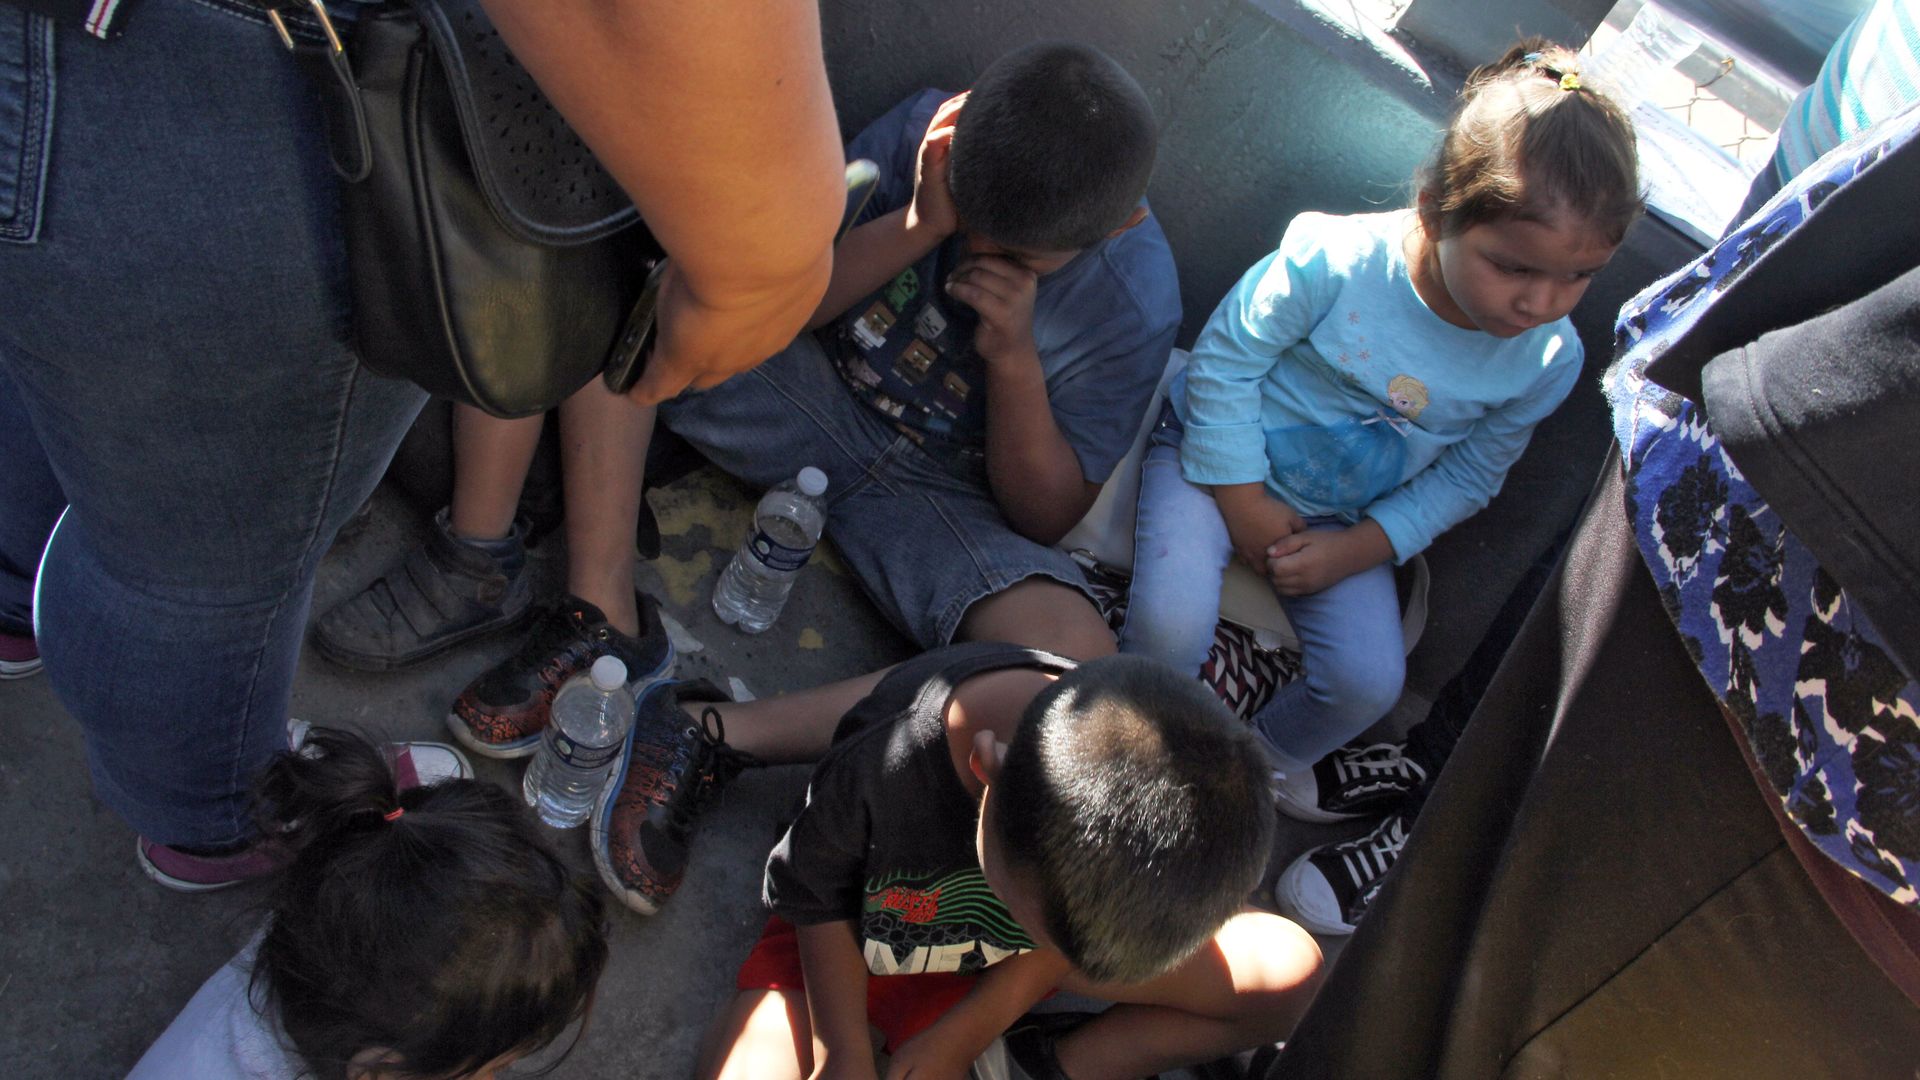 Children detained st the border